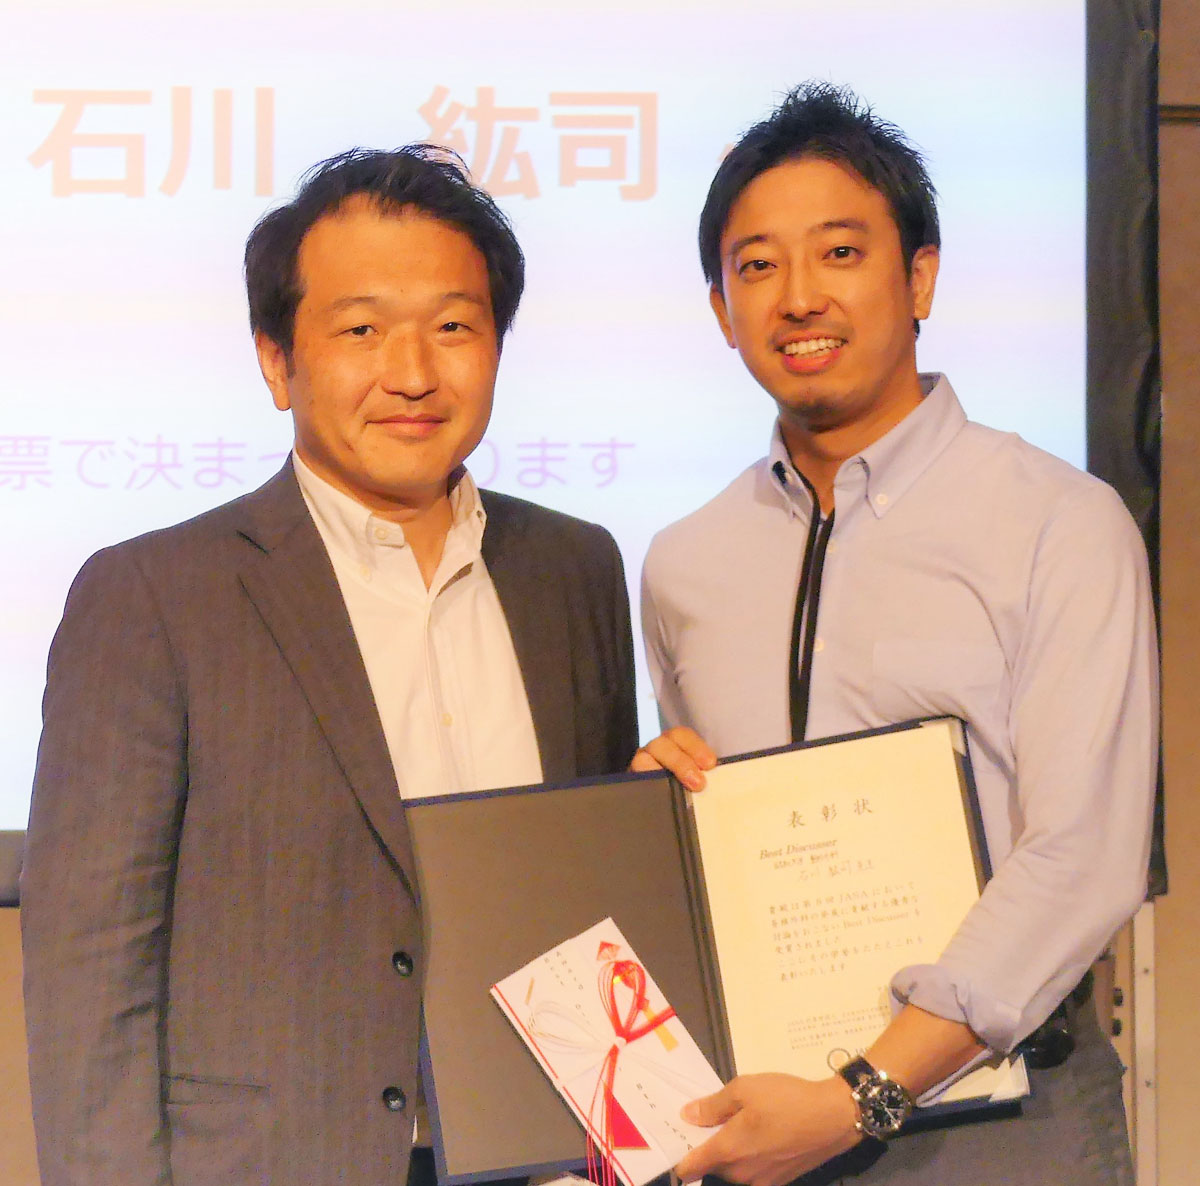 石川 紘司 先生が 第8回JASA (Japan Association of Spine Surgeons with Ambition: 会長 慶応大学 渡辺 航太 先生) で Best Discusser Award を受賞されました